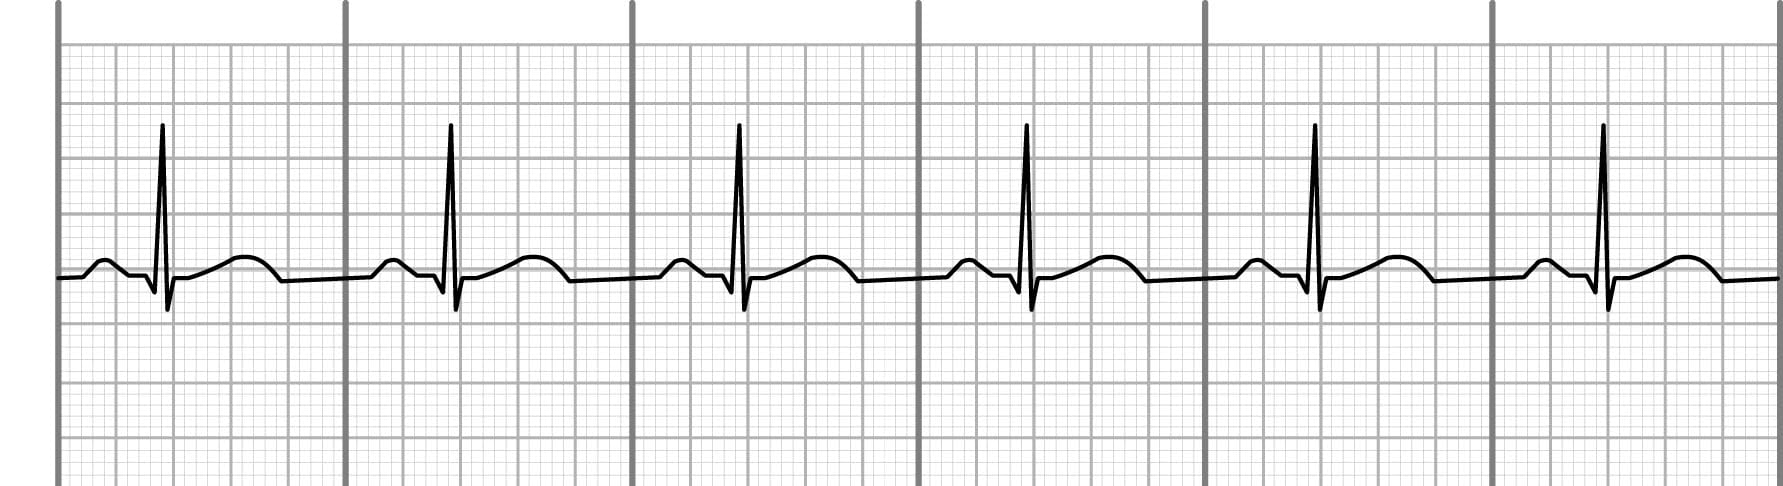 Normal sinus rhythm on an EKG